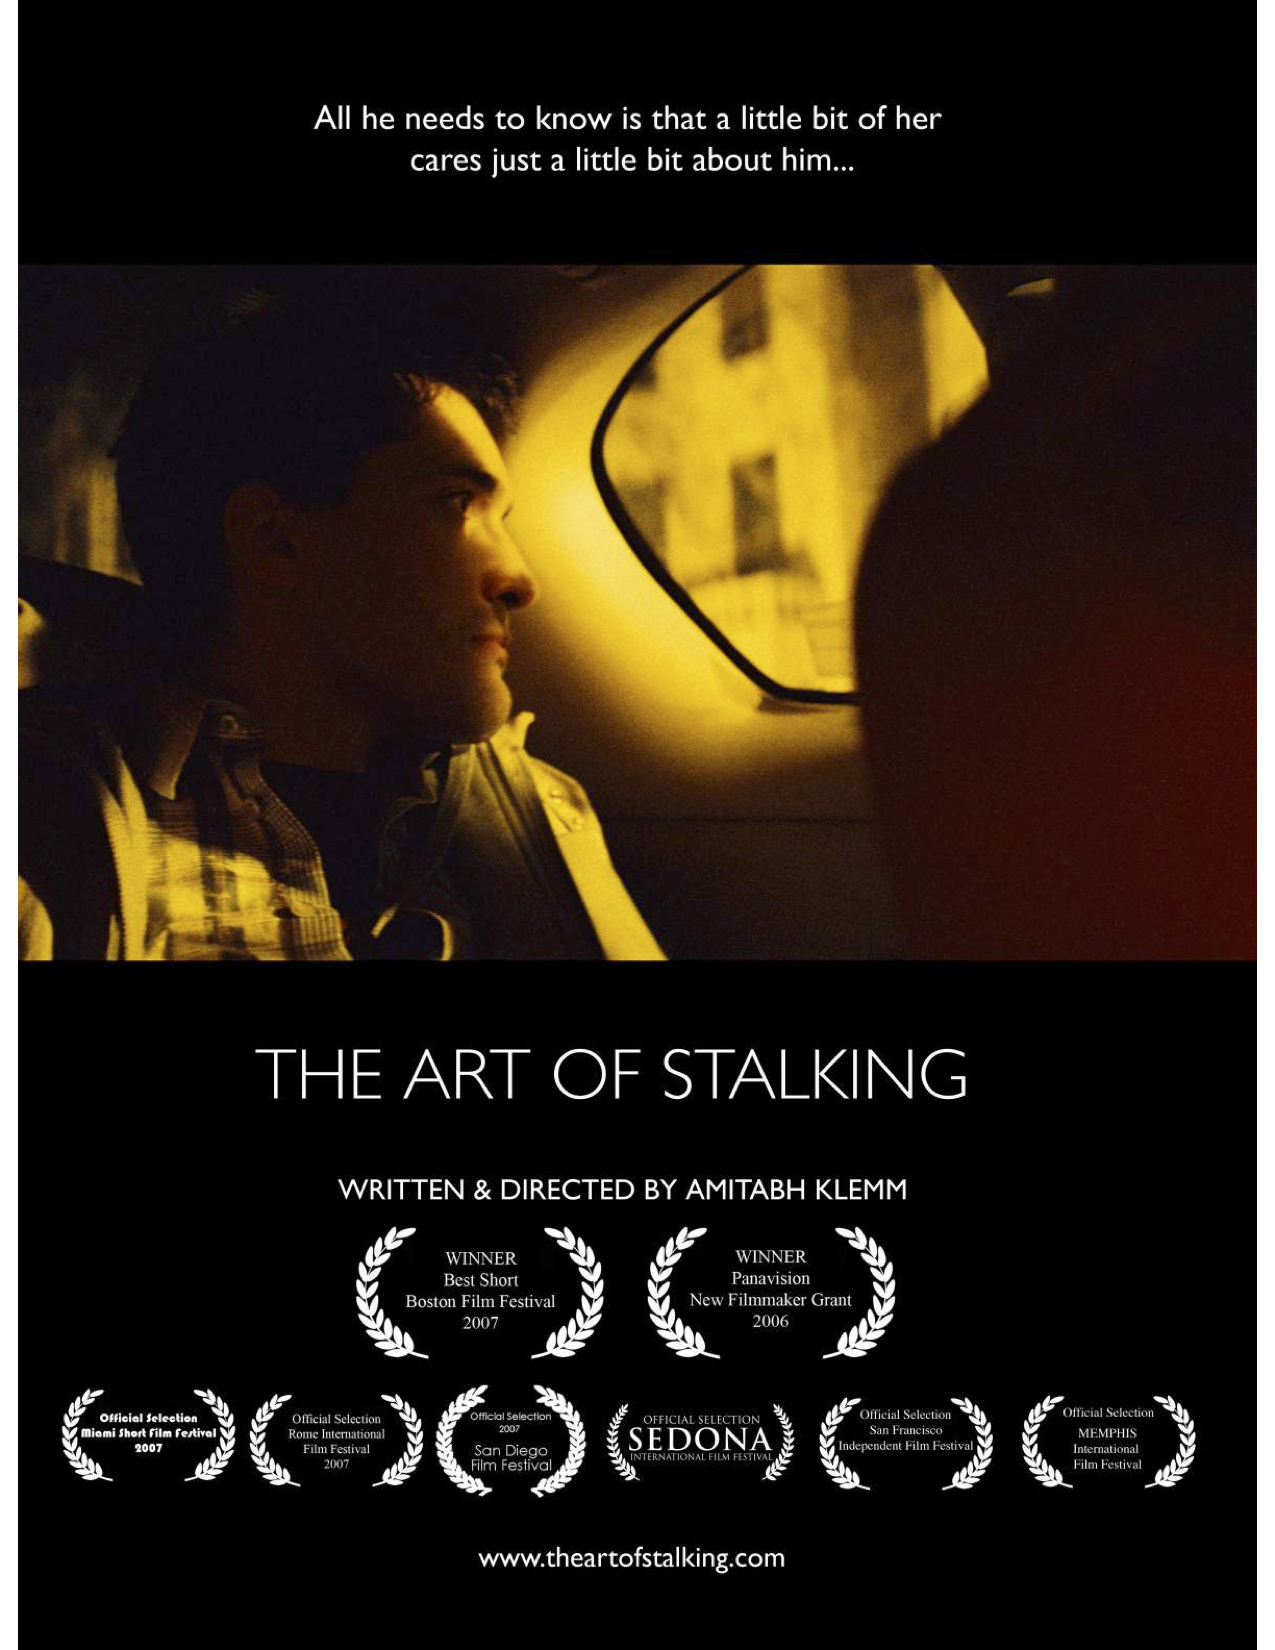 The Art of Stalking